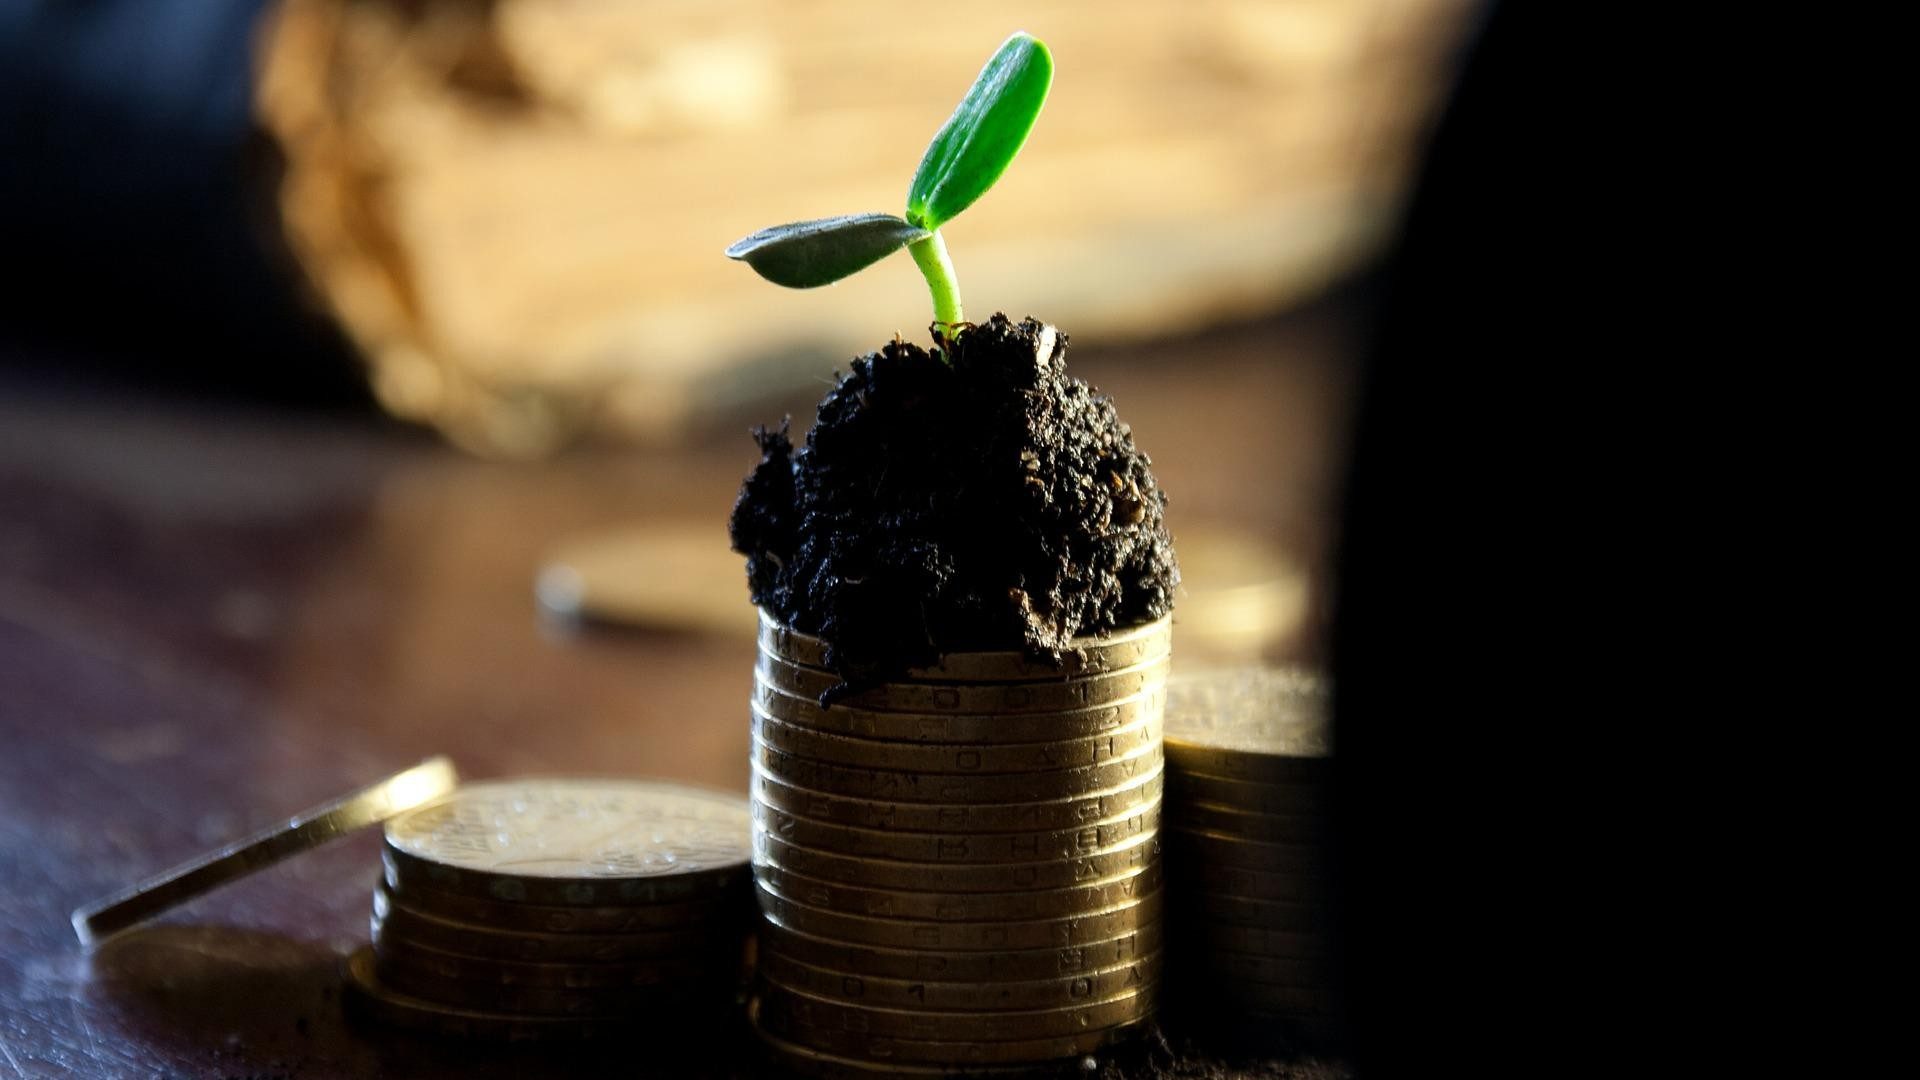 Eine junge Pflanze, die auf Münzen wächst, als Symbol für den Zinseszinseffekt. Foto: Alexsander-777 via Pixabay